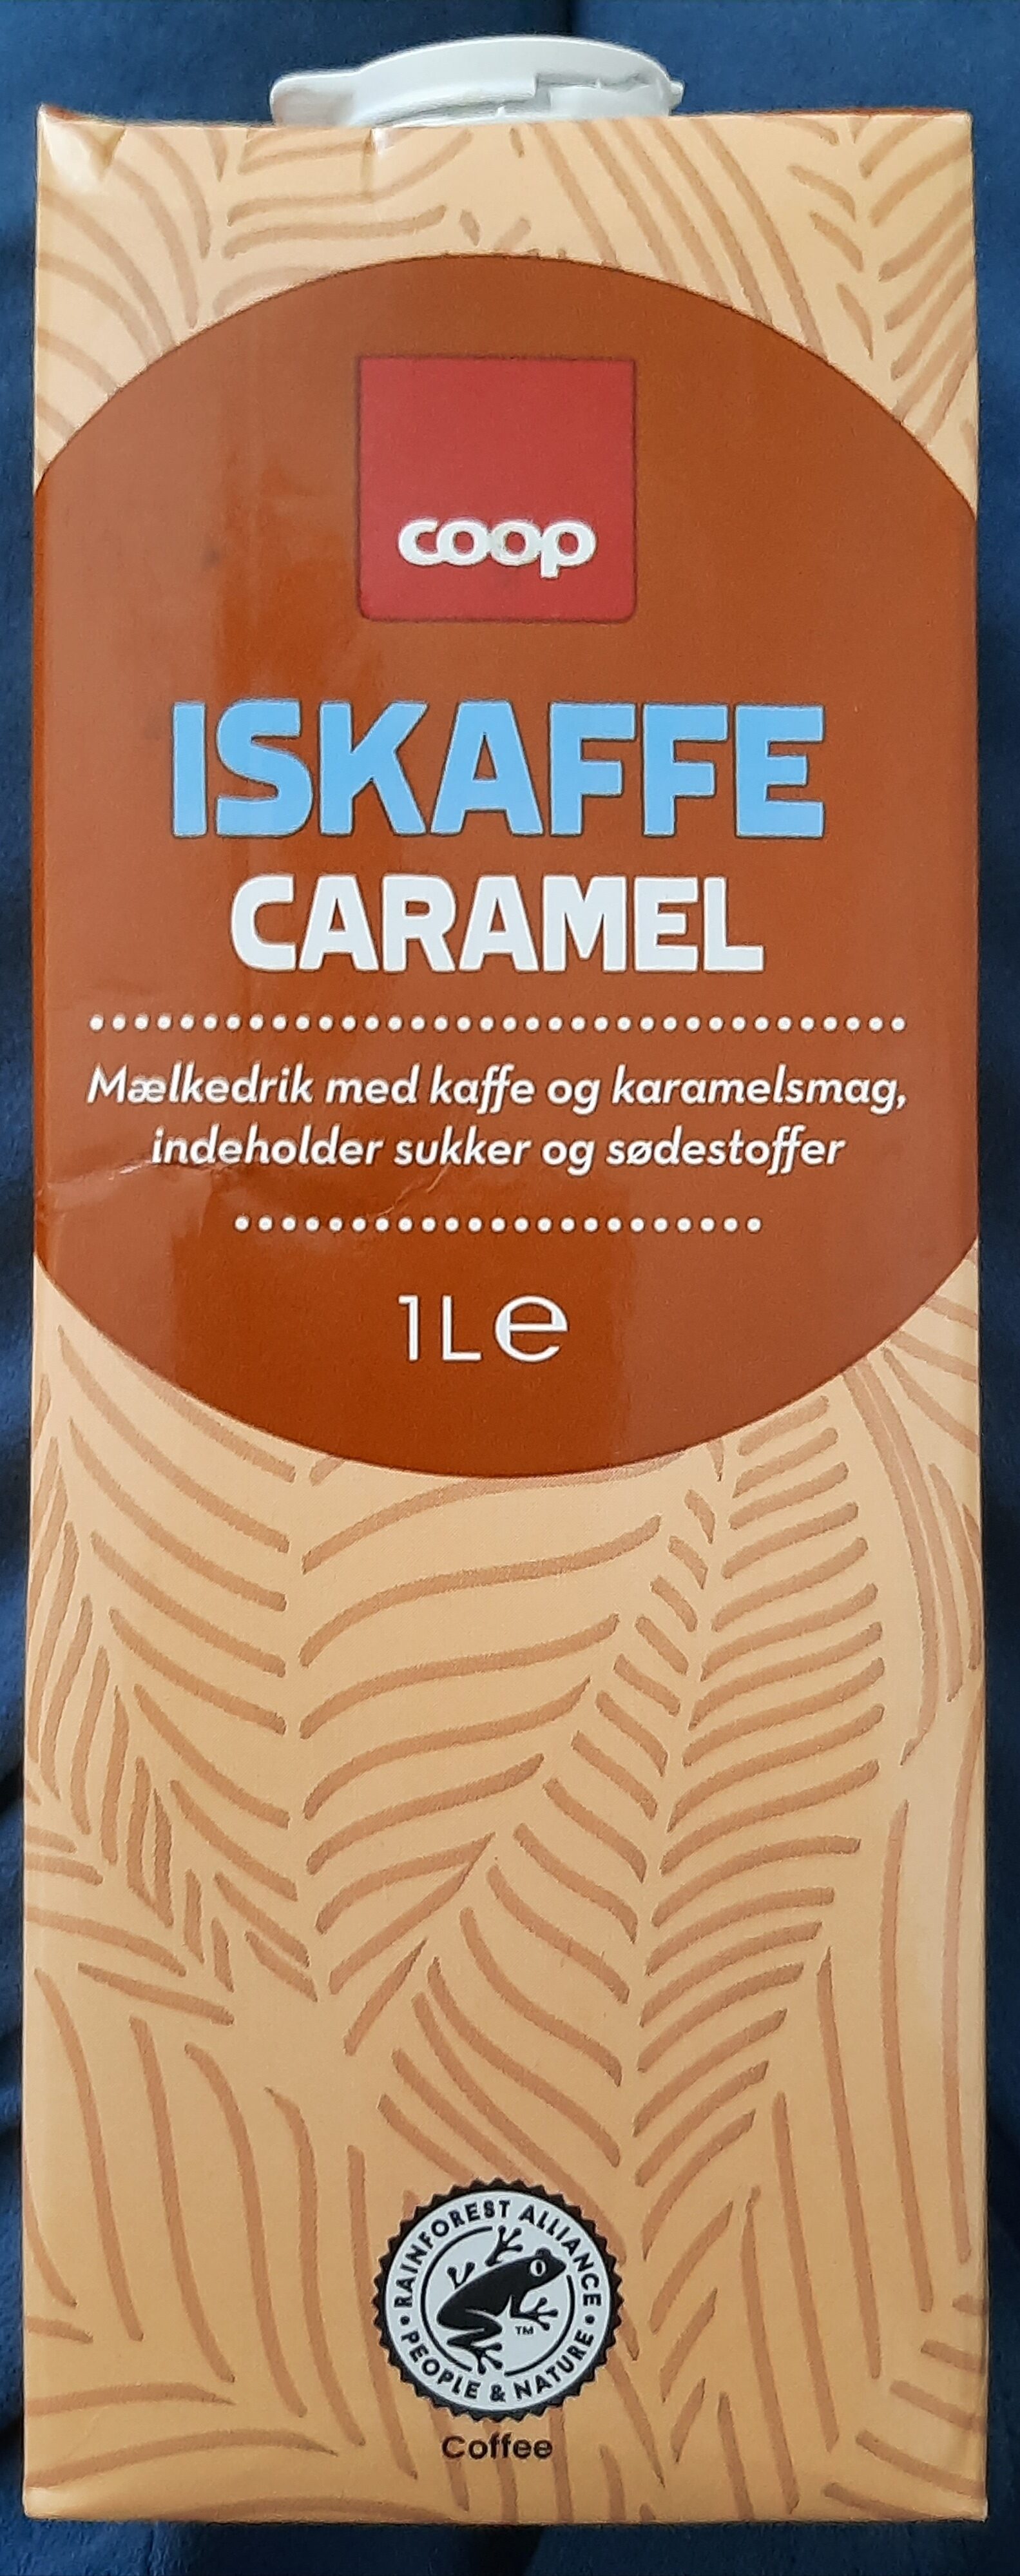 Iskaffe Caramel - Produkt - en